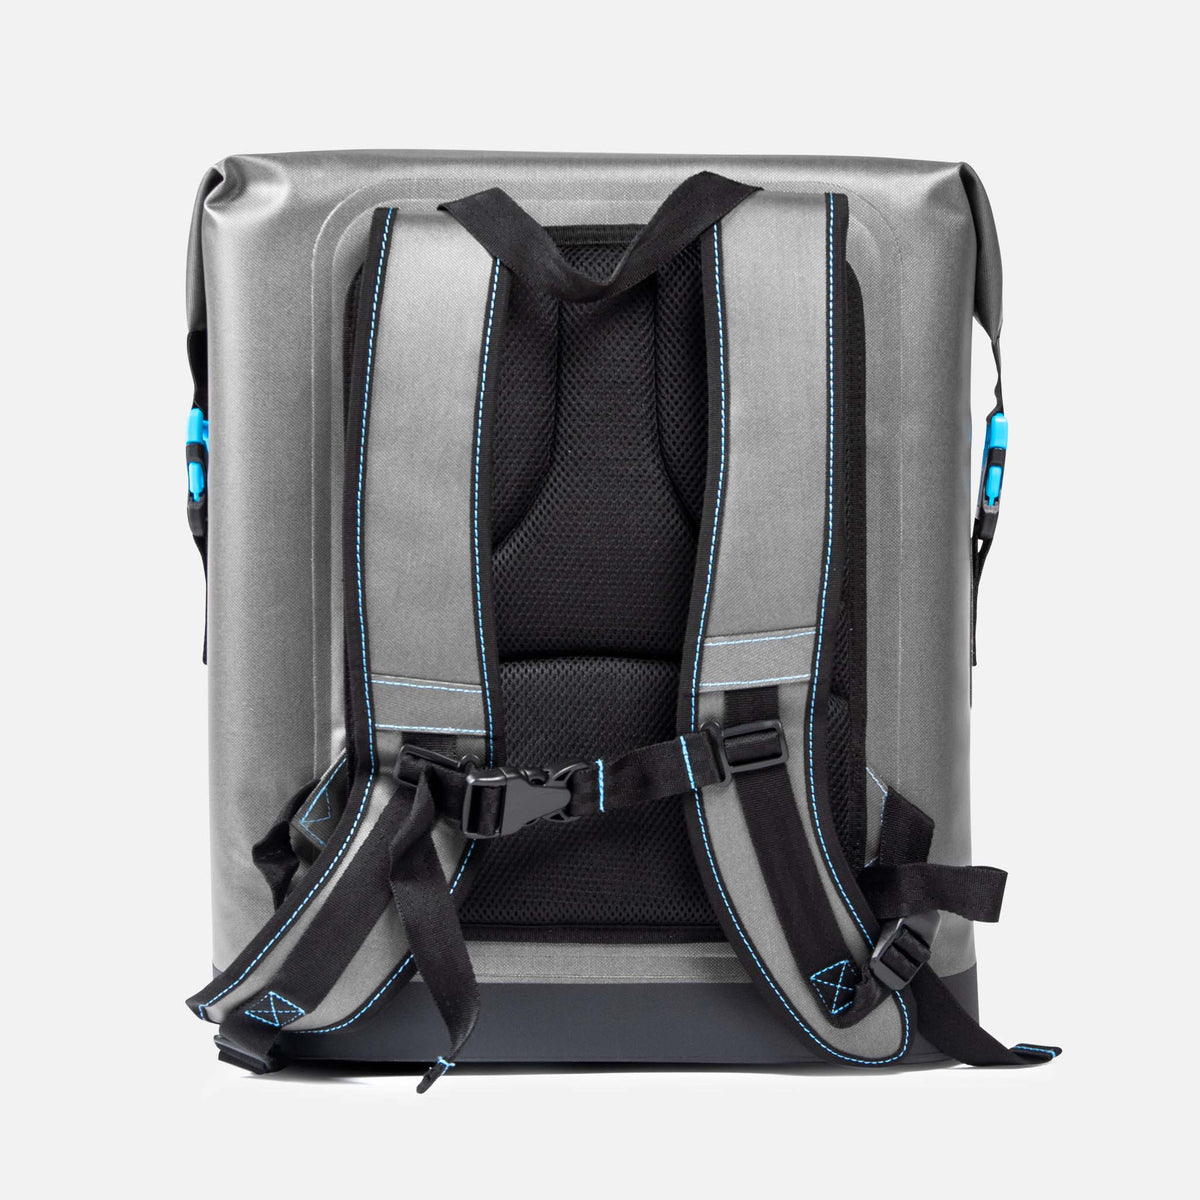 Nomad Go- Backpack Cooler